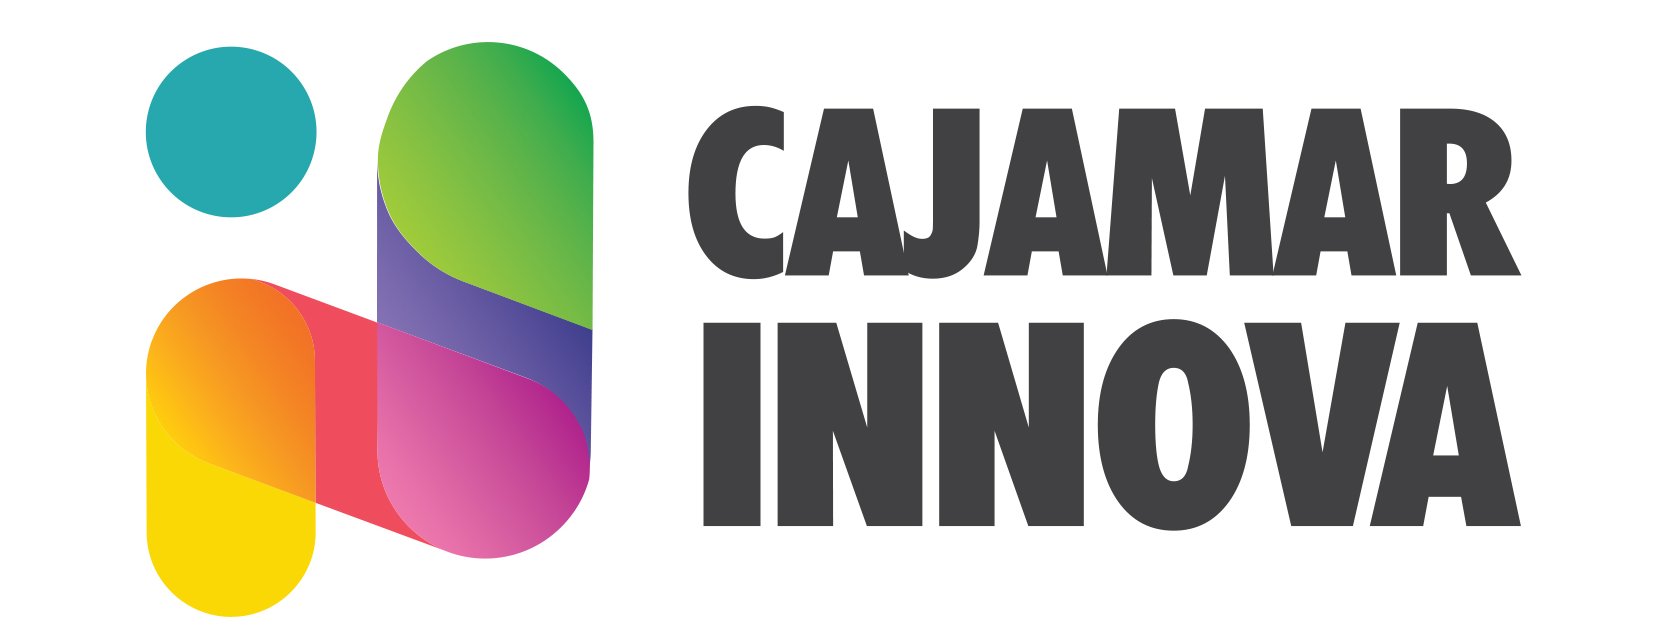 Cajamar Innova en el contexto emprendedor español